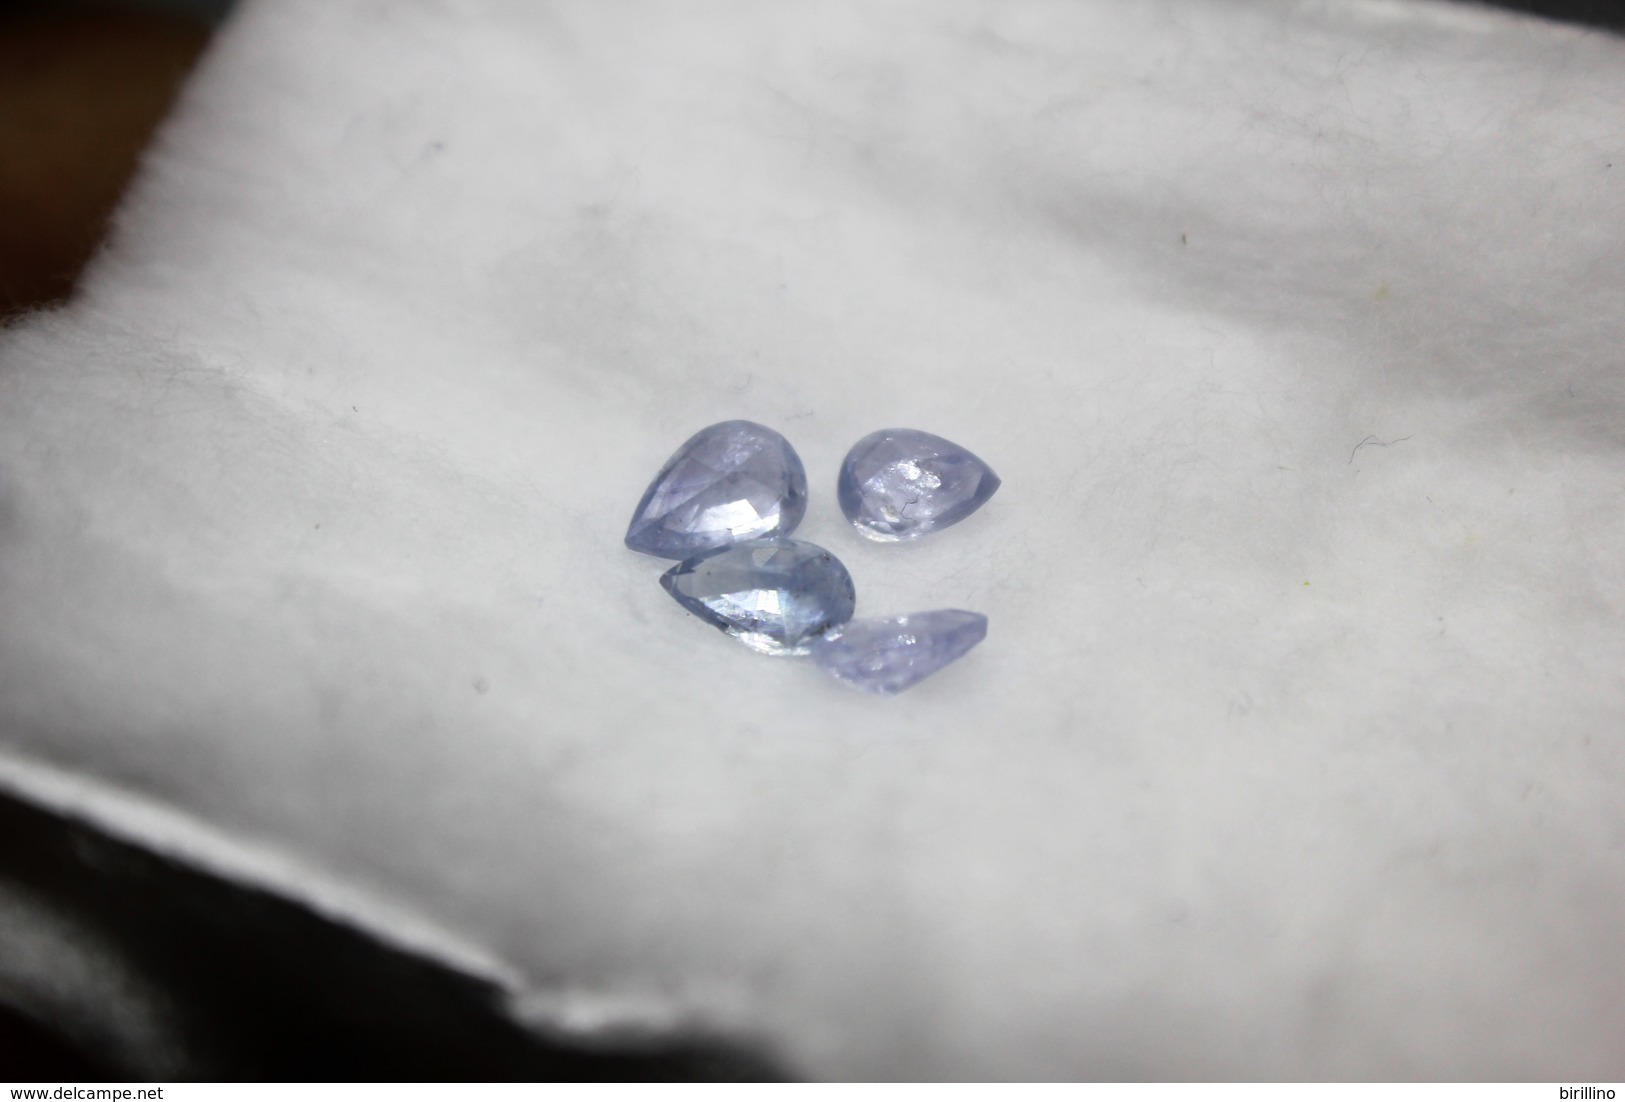 4388 - 4 gemme di Zaffiro Blu chiaro ct. 1.80 - Certificato autenticità Italiano